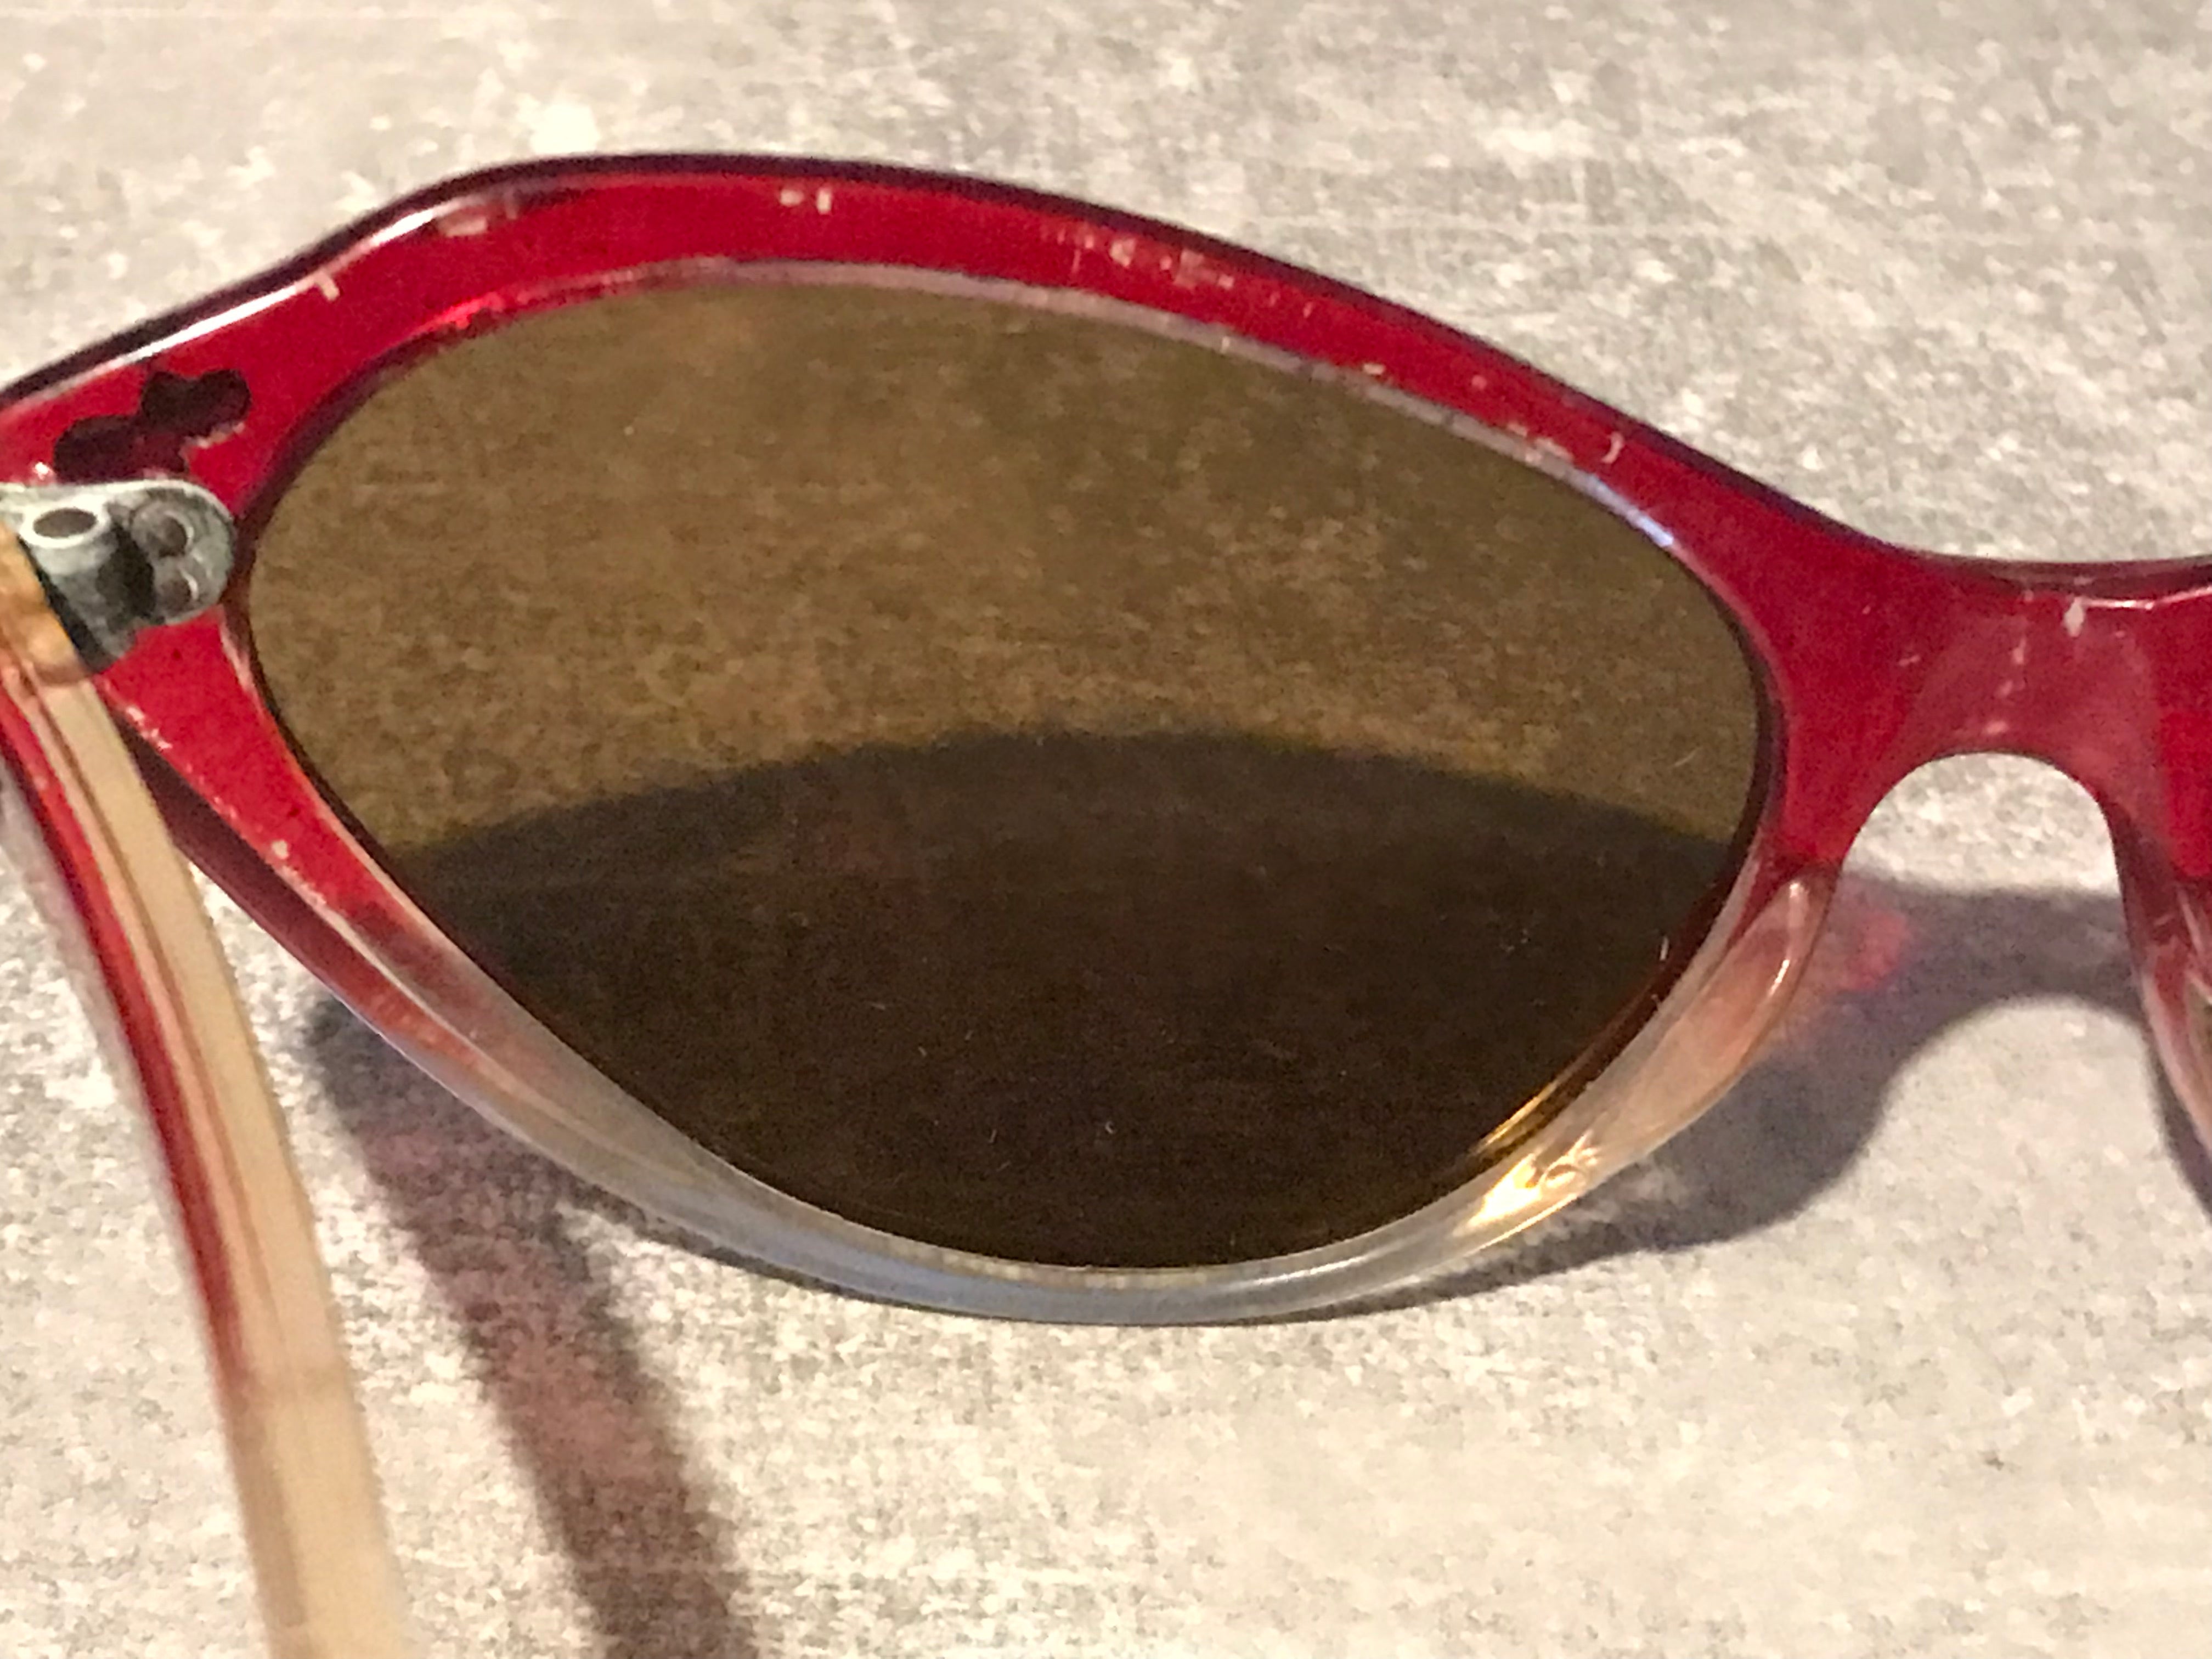 50er Jahre Cateye Sonnenbrille